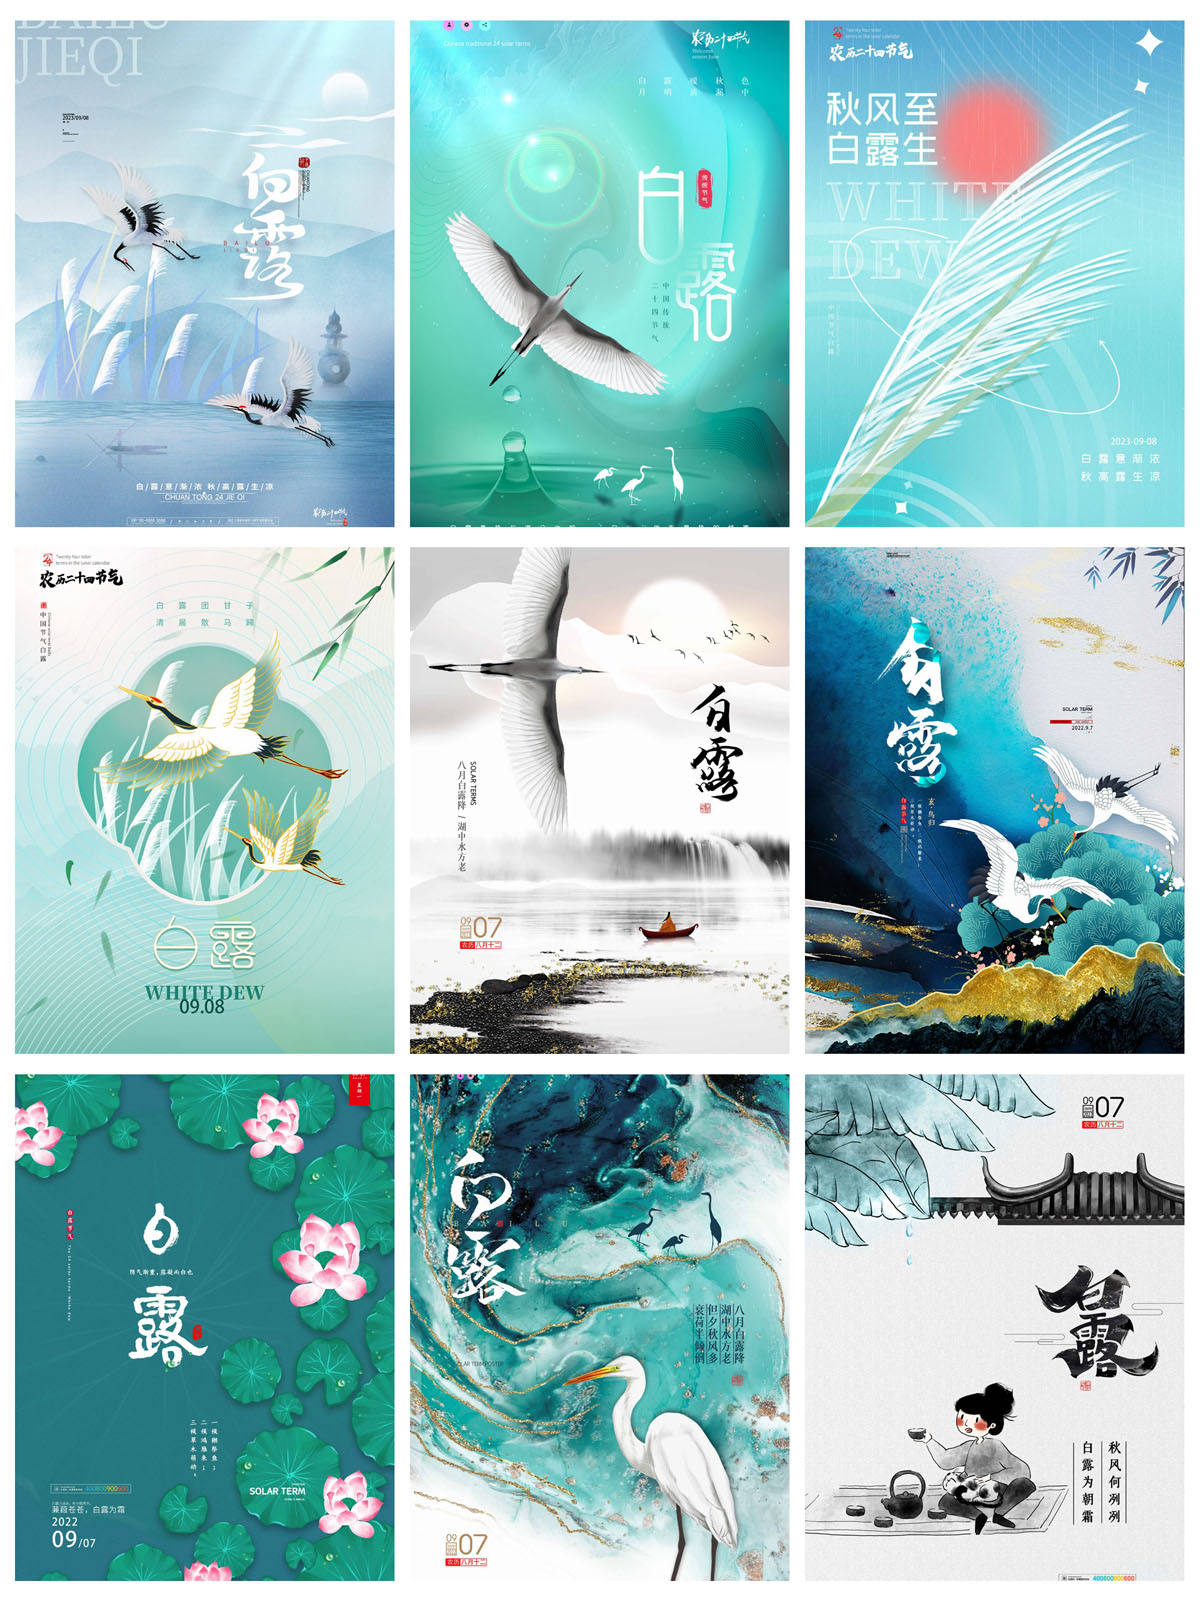 54款中国风24节气白露宣传海报PSD模板 设计素材 第2张